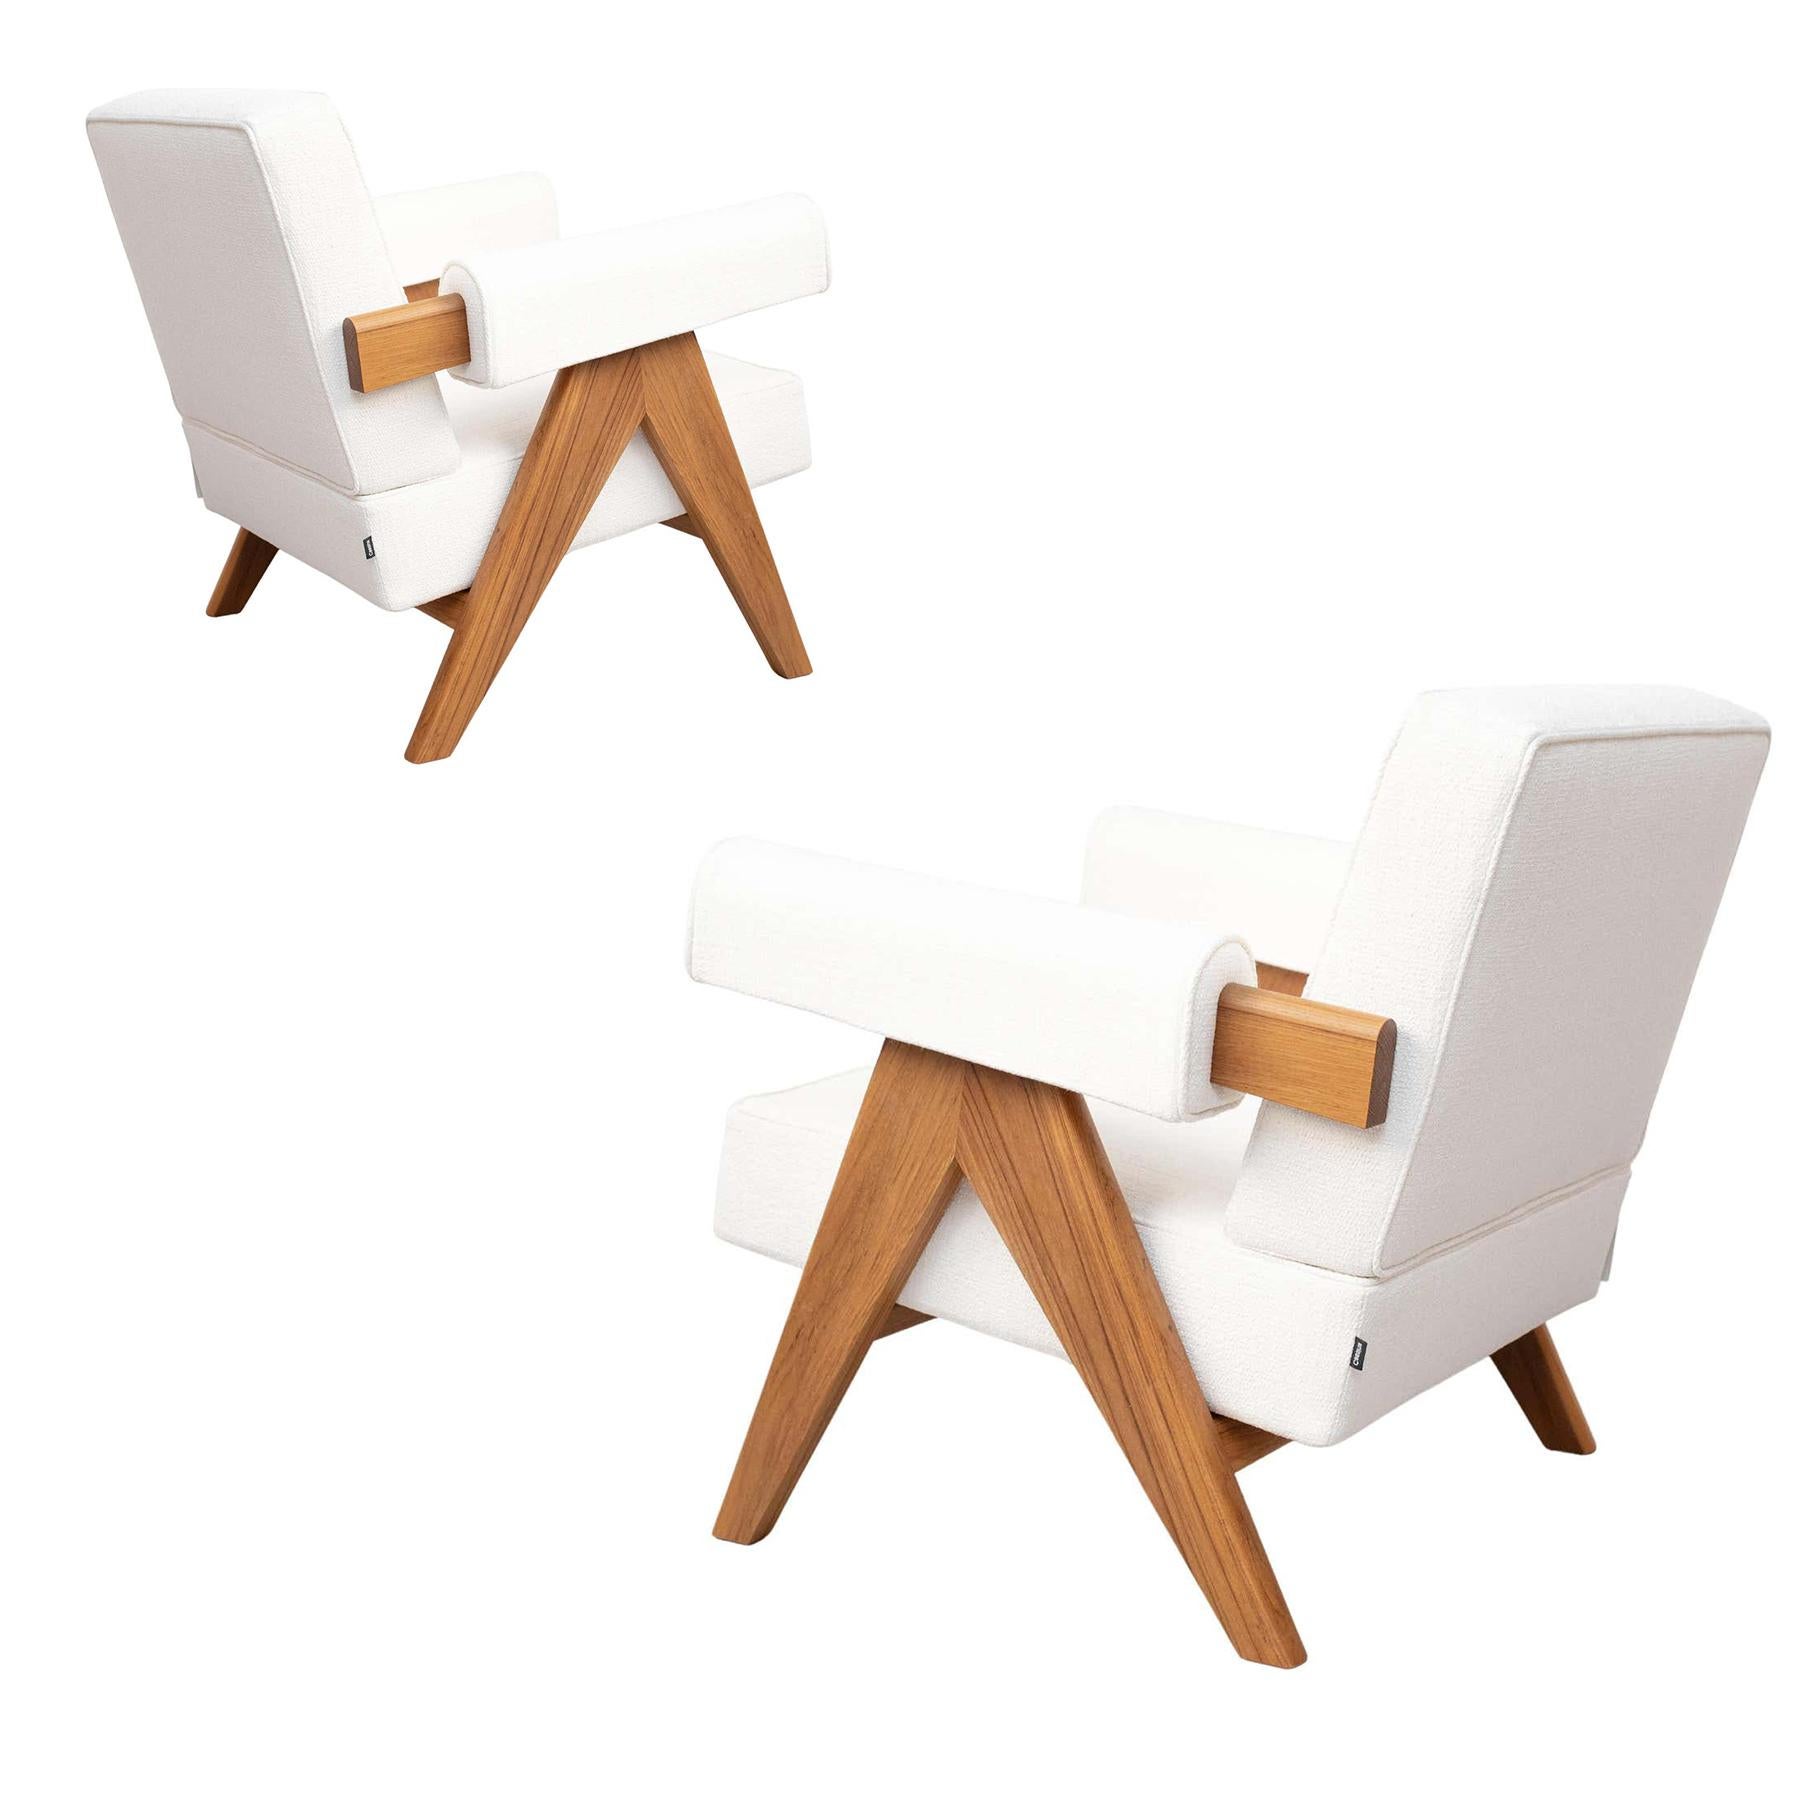 Ensemble de deux fauteuils conçus par Pierre Jeanneret vers 1950, relancé en 2019.
Fabriqué par Cassina en Italie.

Inscrite sur la liste du patrimoine culturel de l'UNESCO en 2016, l'extraordinaire architecture du complexe du Capitole de Le